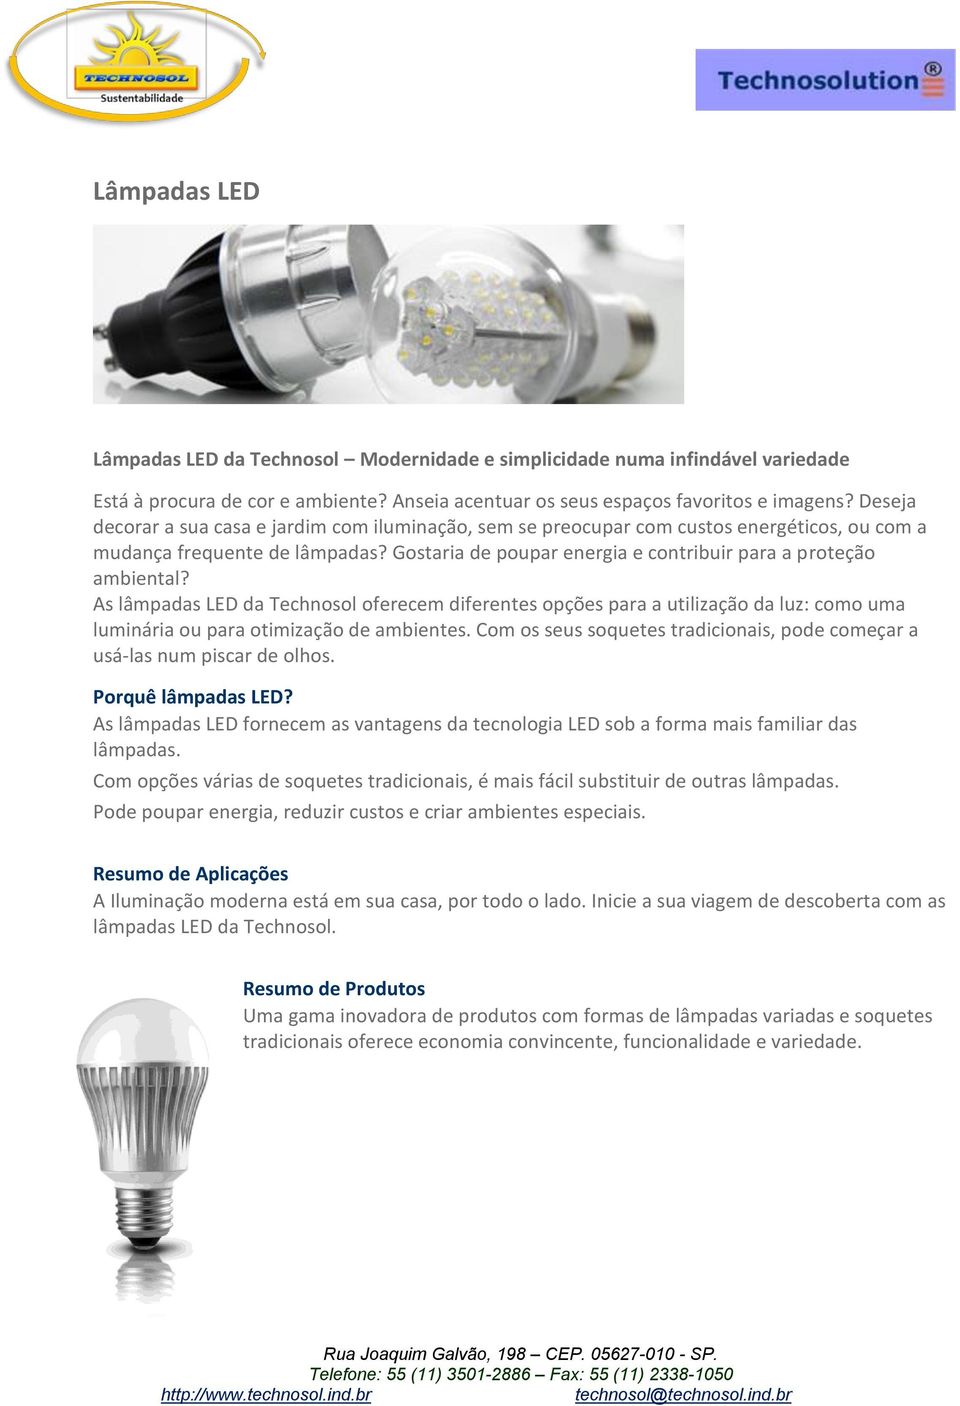 As lâmpadas LED da Technosol oferecem diferentes opções para a utilização da luz: como uma luminária ou para otimização de ambientes.